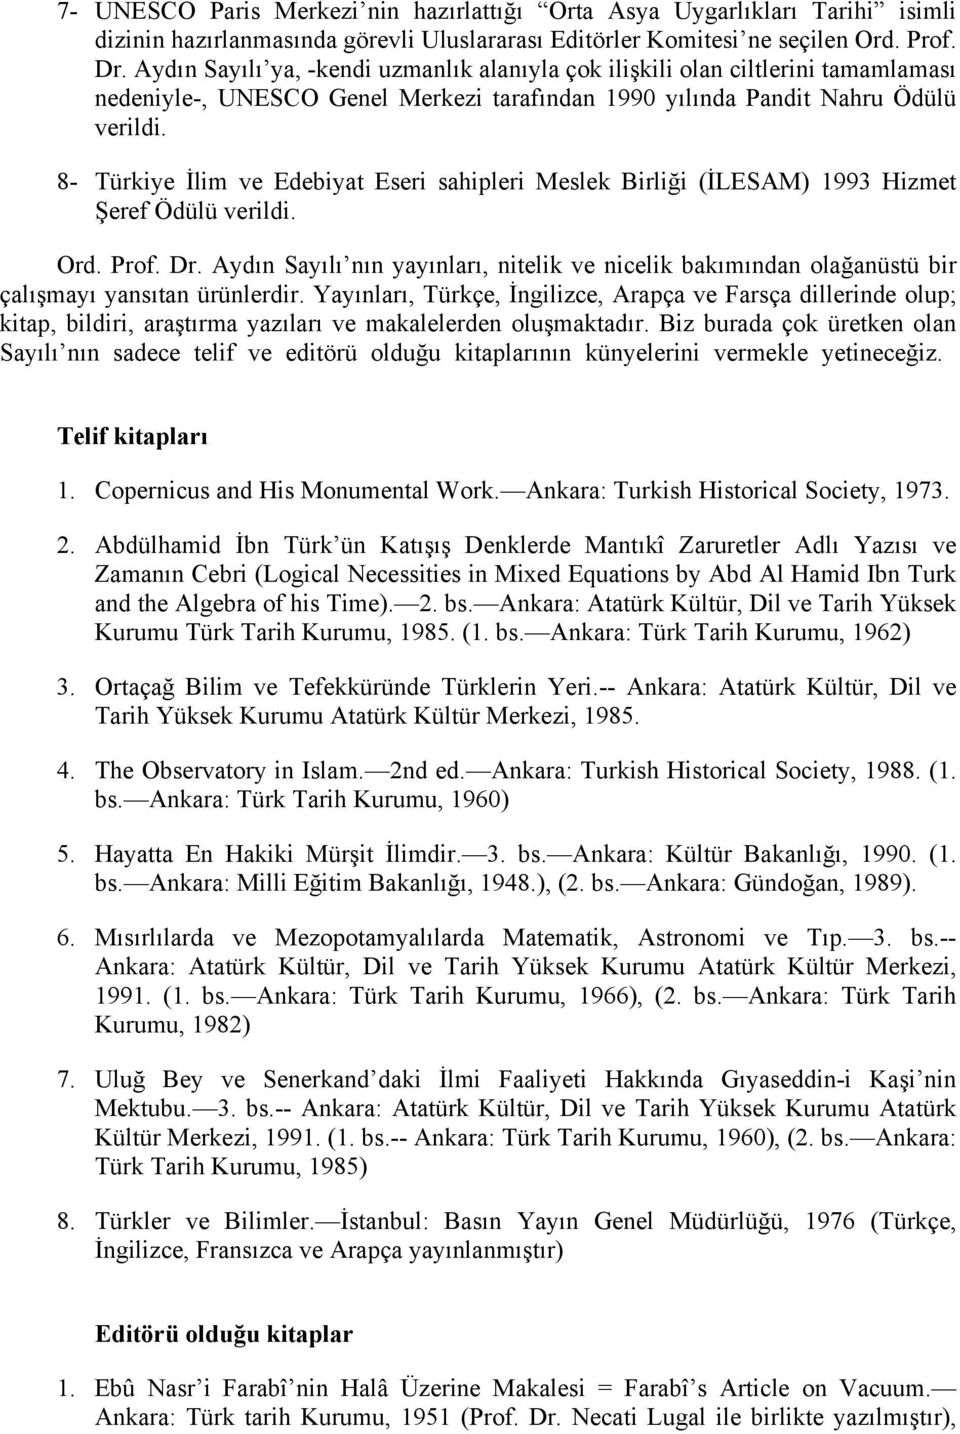 8- Türkiye İlim ve Edebiyat Eseri sahipleri Meslek Birliği (İLESAM) 1993 Hizmet Şeref Ödülü verildi. Ord. Prof. Dr.